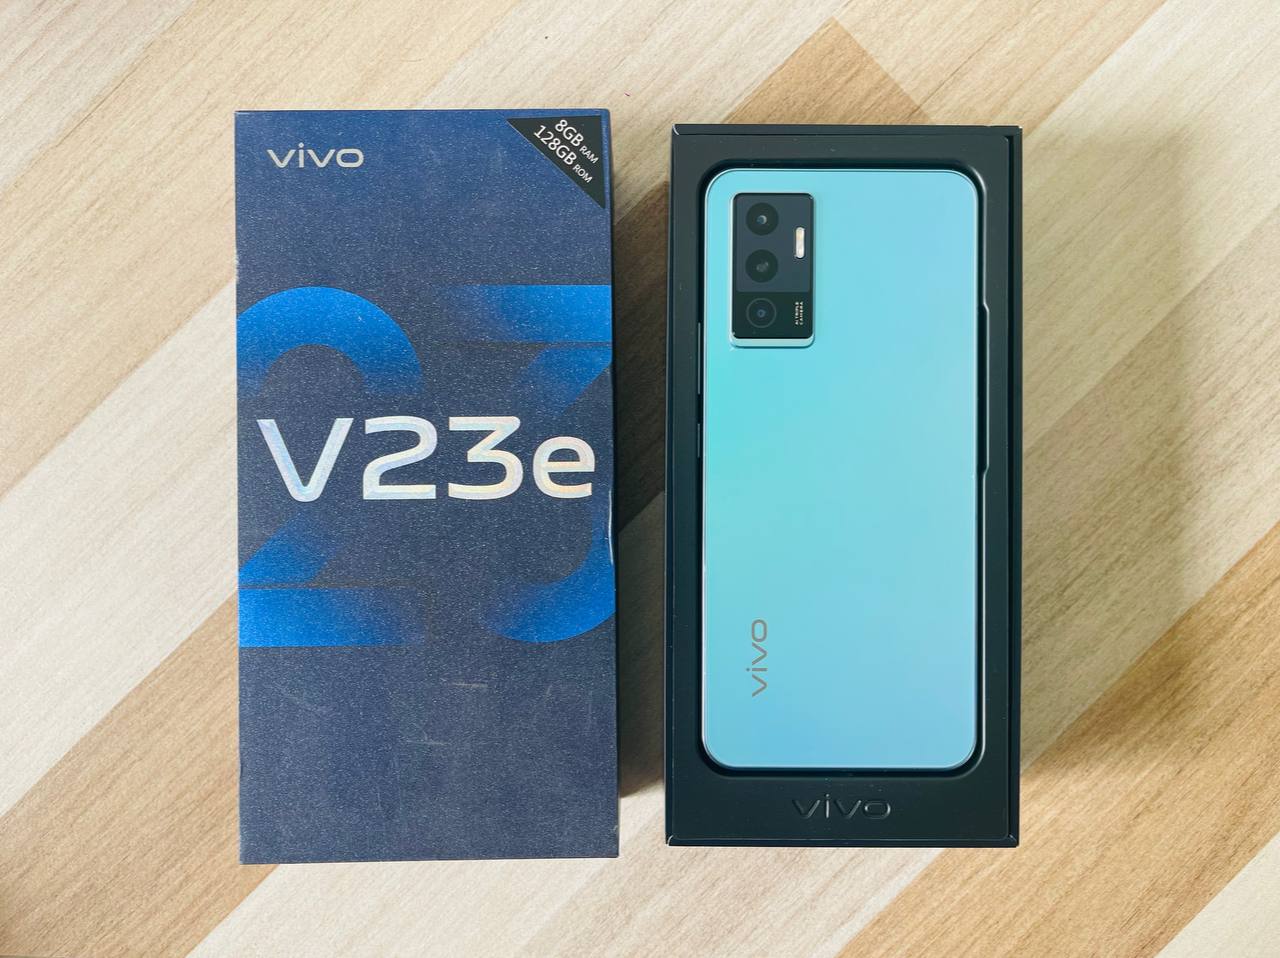 thiết kế Vivo V23e 